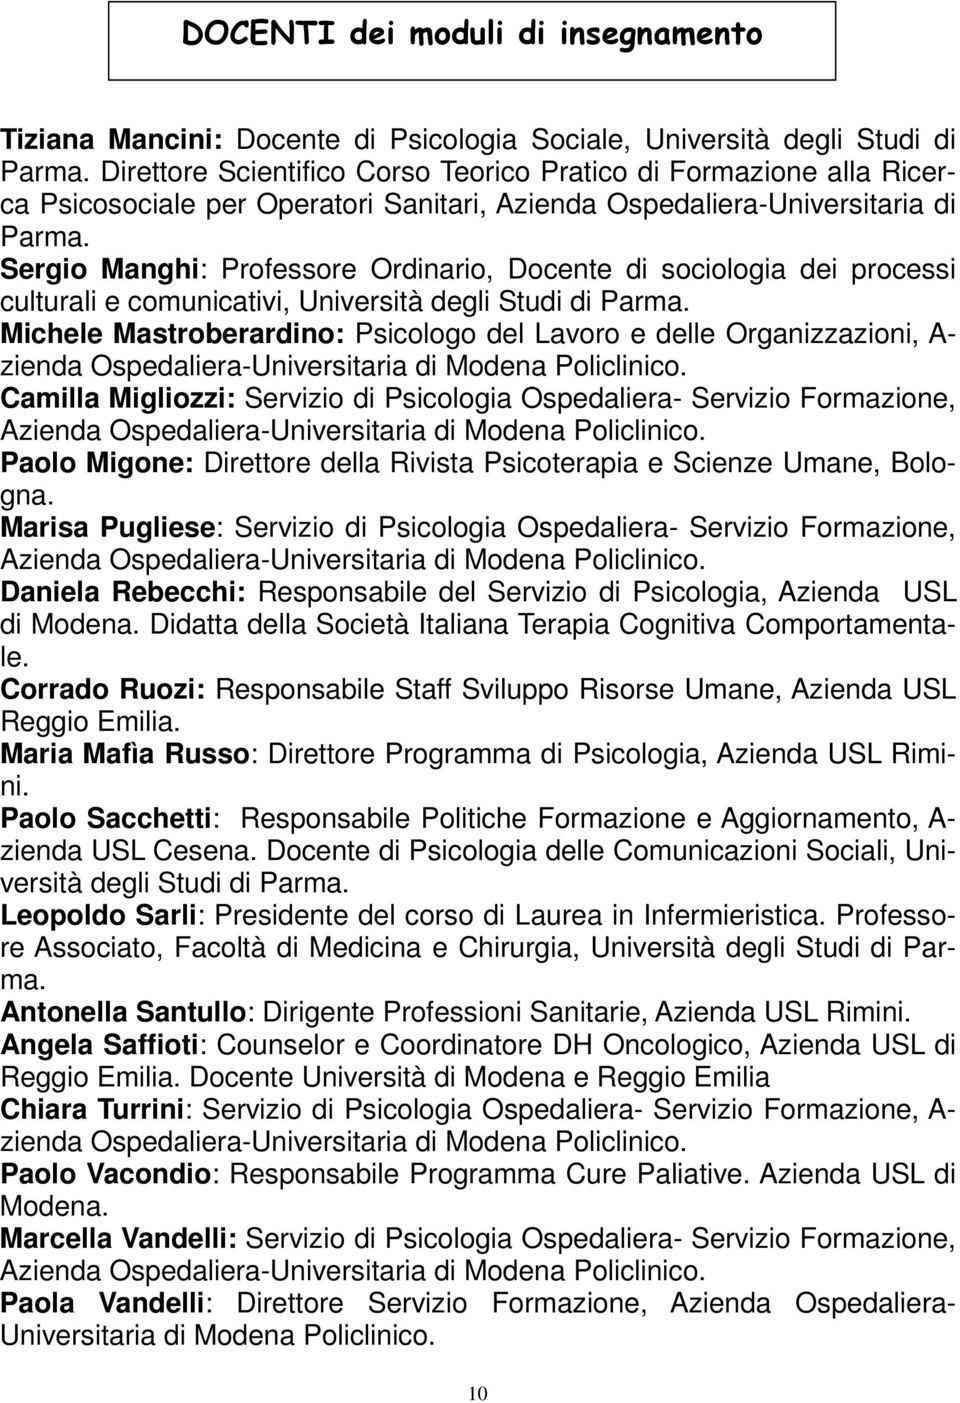 Sergio Manghi: Professore Ordinario, Docente di sociologia dei processi culturali e comunicativi, Università degli Studi di Parma.